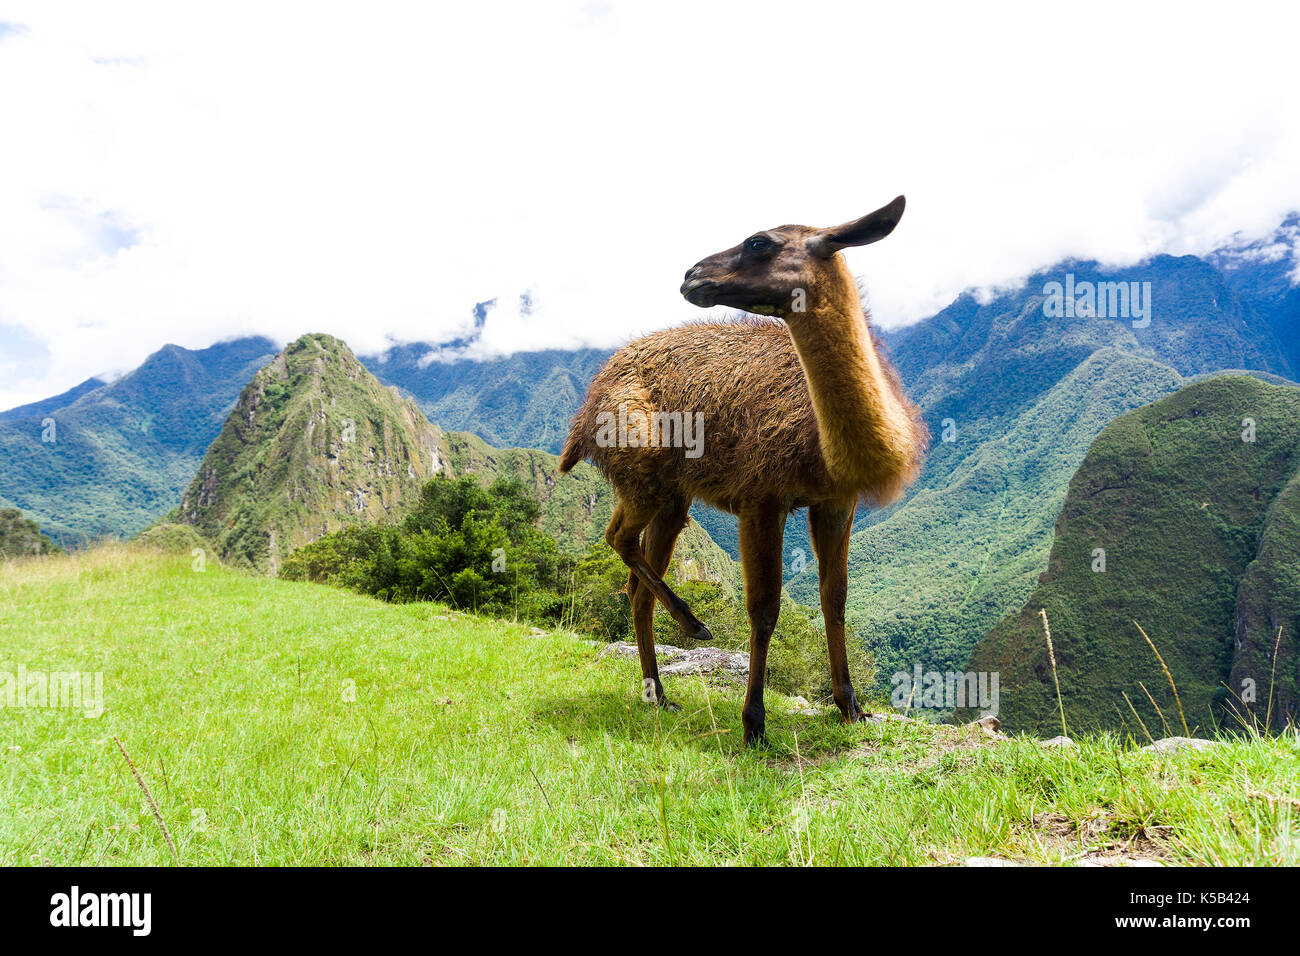 Cute brown lama on the ruins of Machu Picchu lost city in Peru Stock Photo